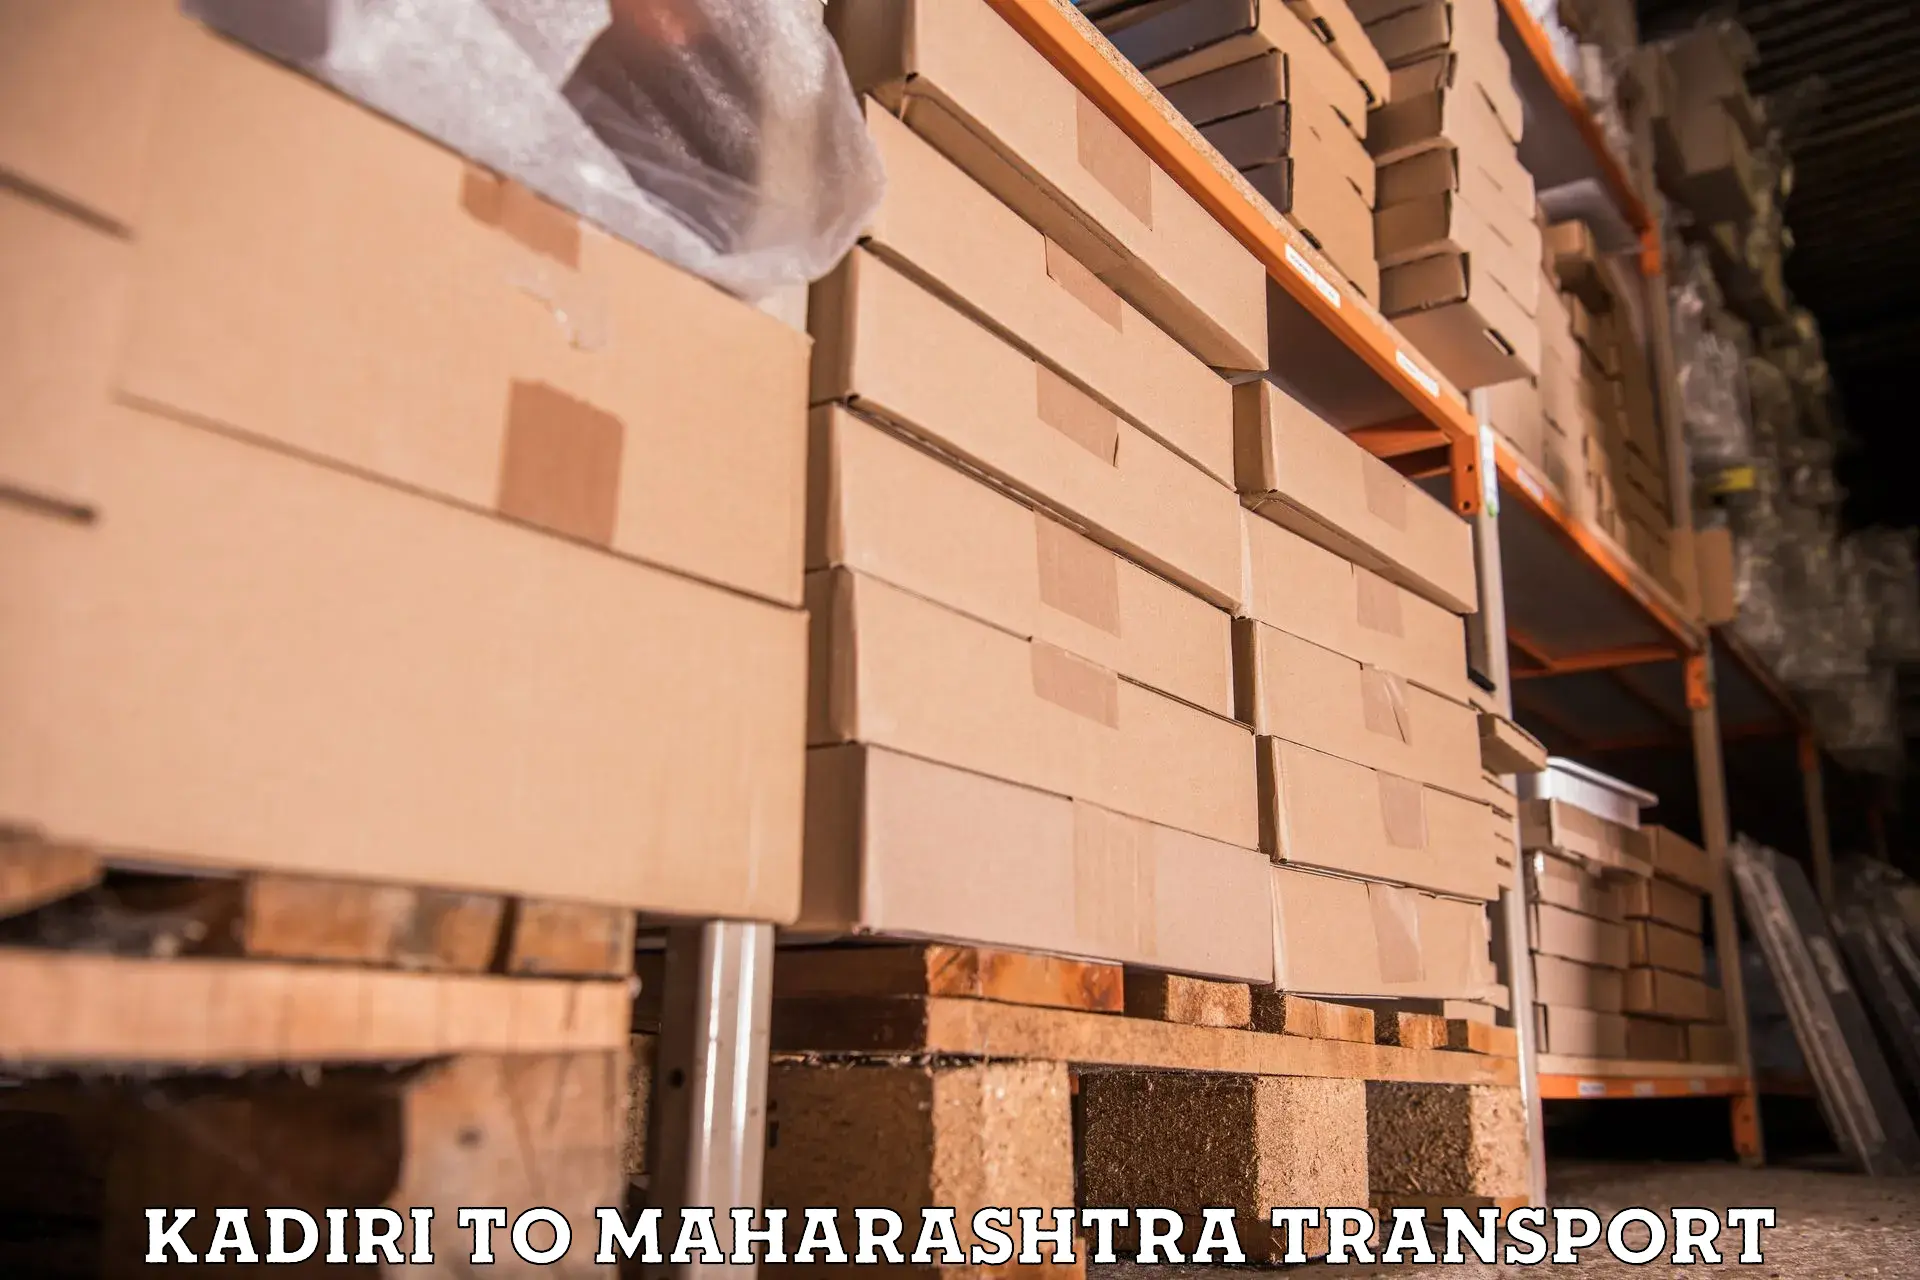 Truck transport companies in India Kadiri to Nandura